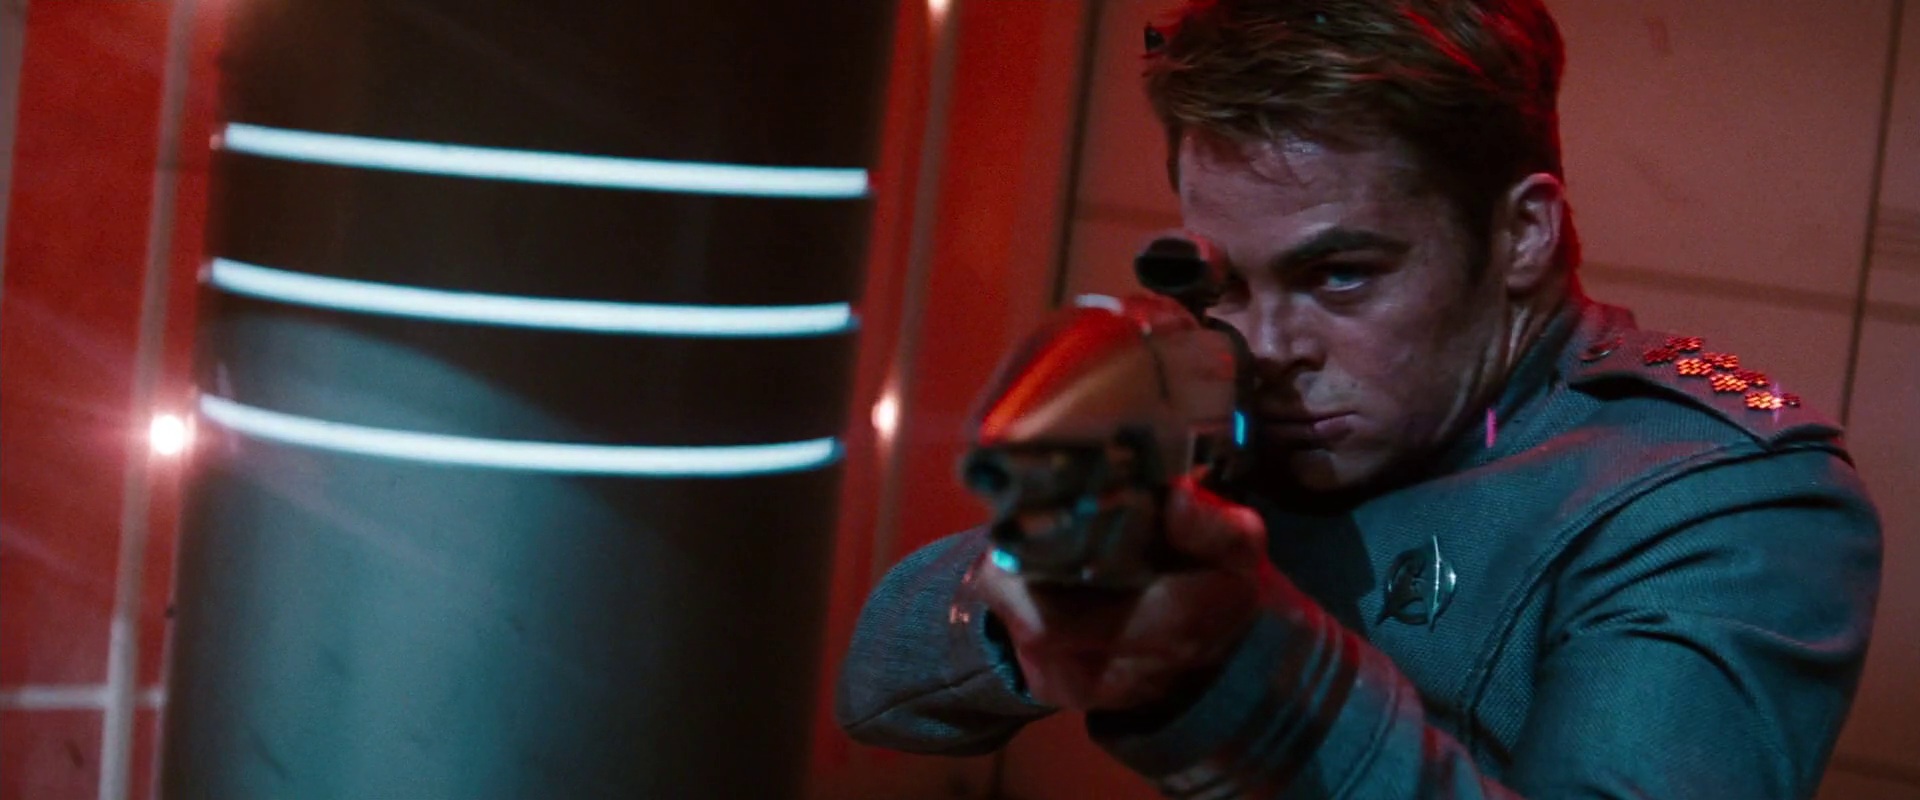 Kirk najde phaserovou pušku a brání ostatní.